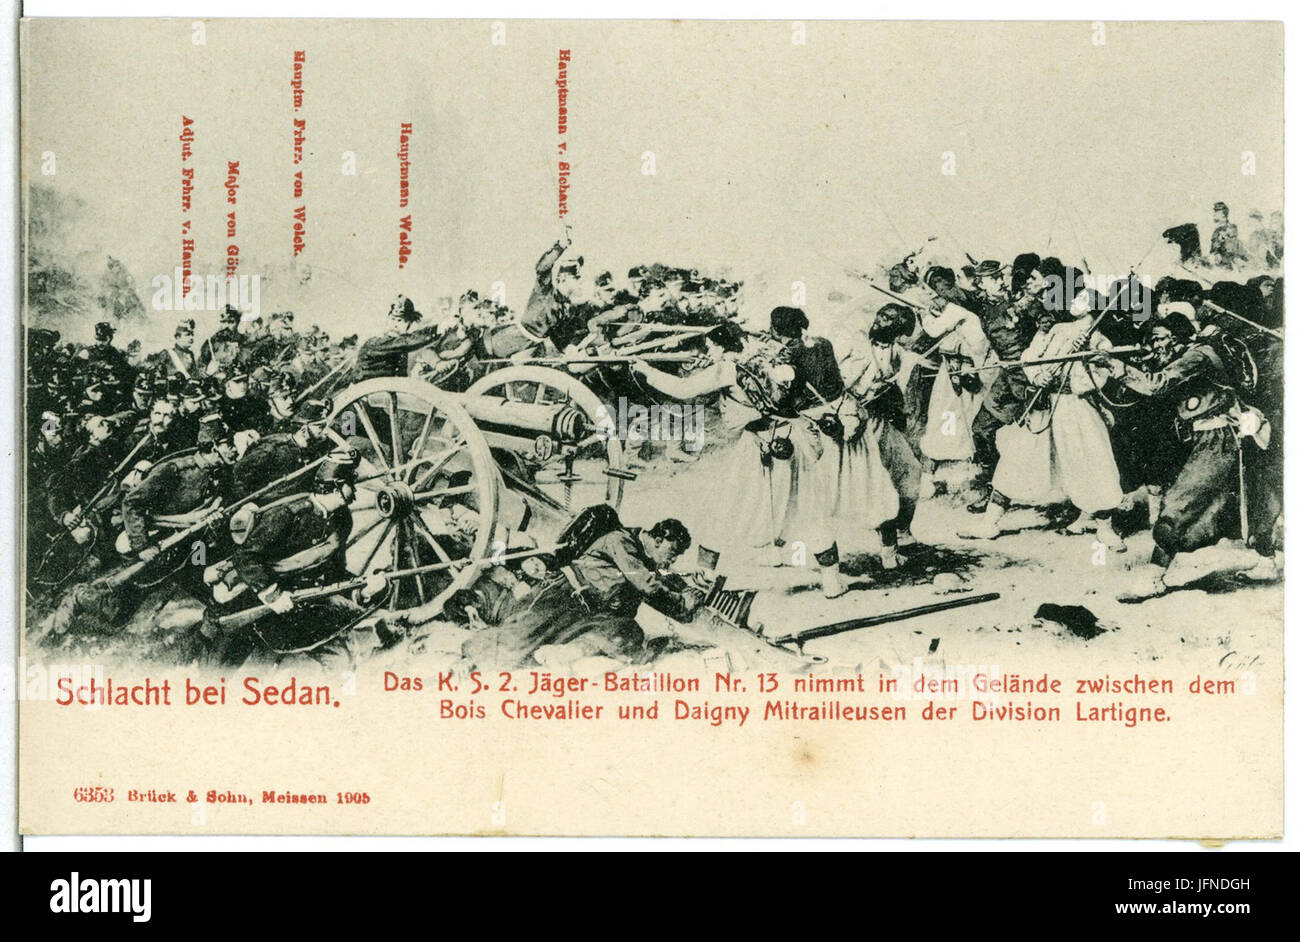 06353-Sedan-1905-Schlacht bei Sedan - Das 2. Königlich Sächsische Jäger-Bataillon im Gelände-Brück & Sohn Kunstverlag Stock Photo